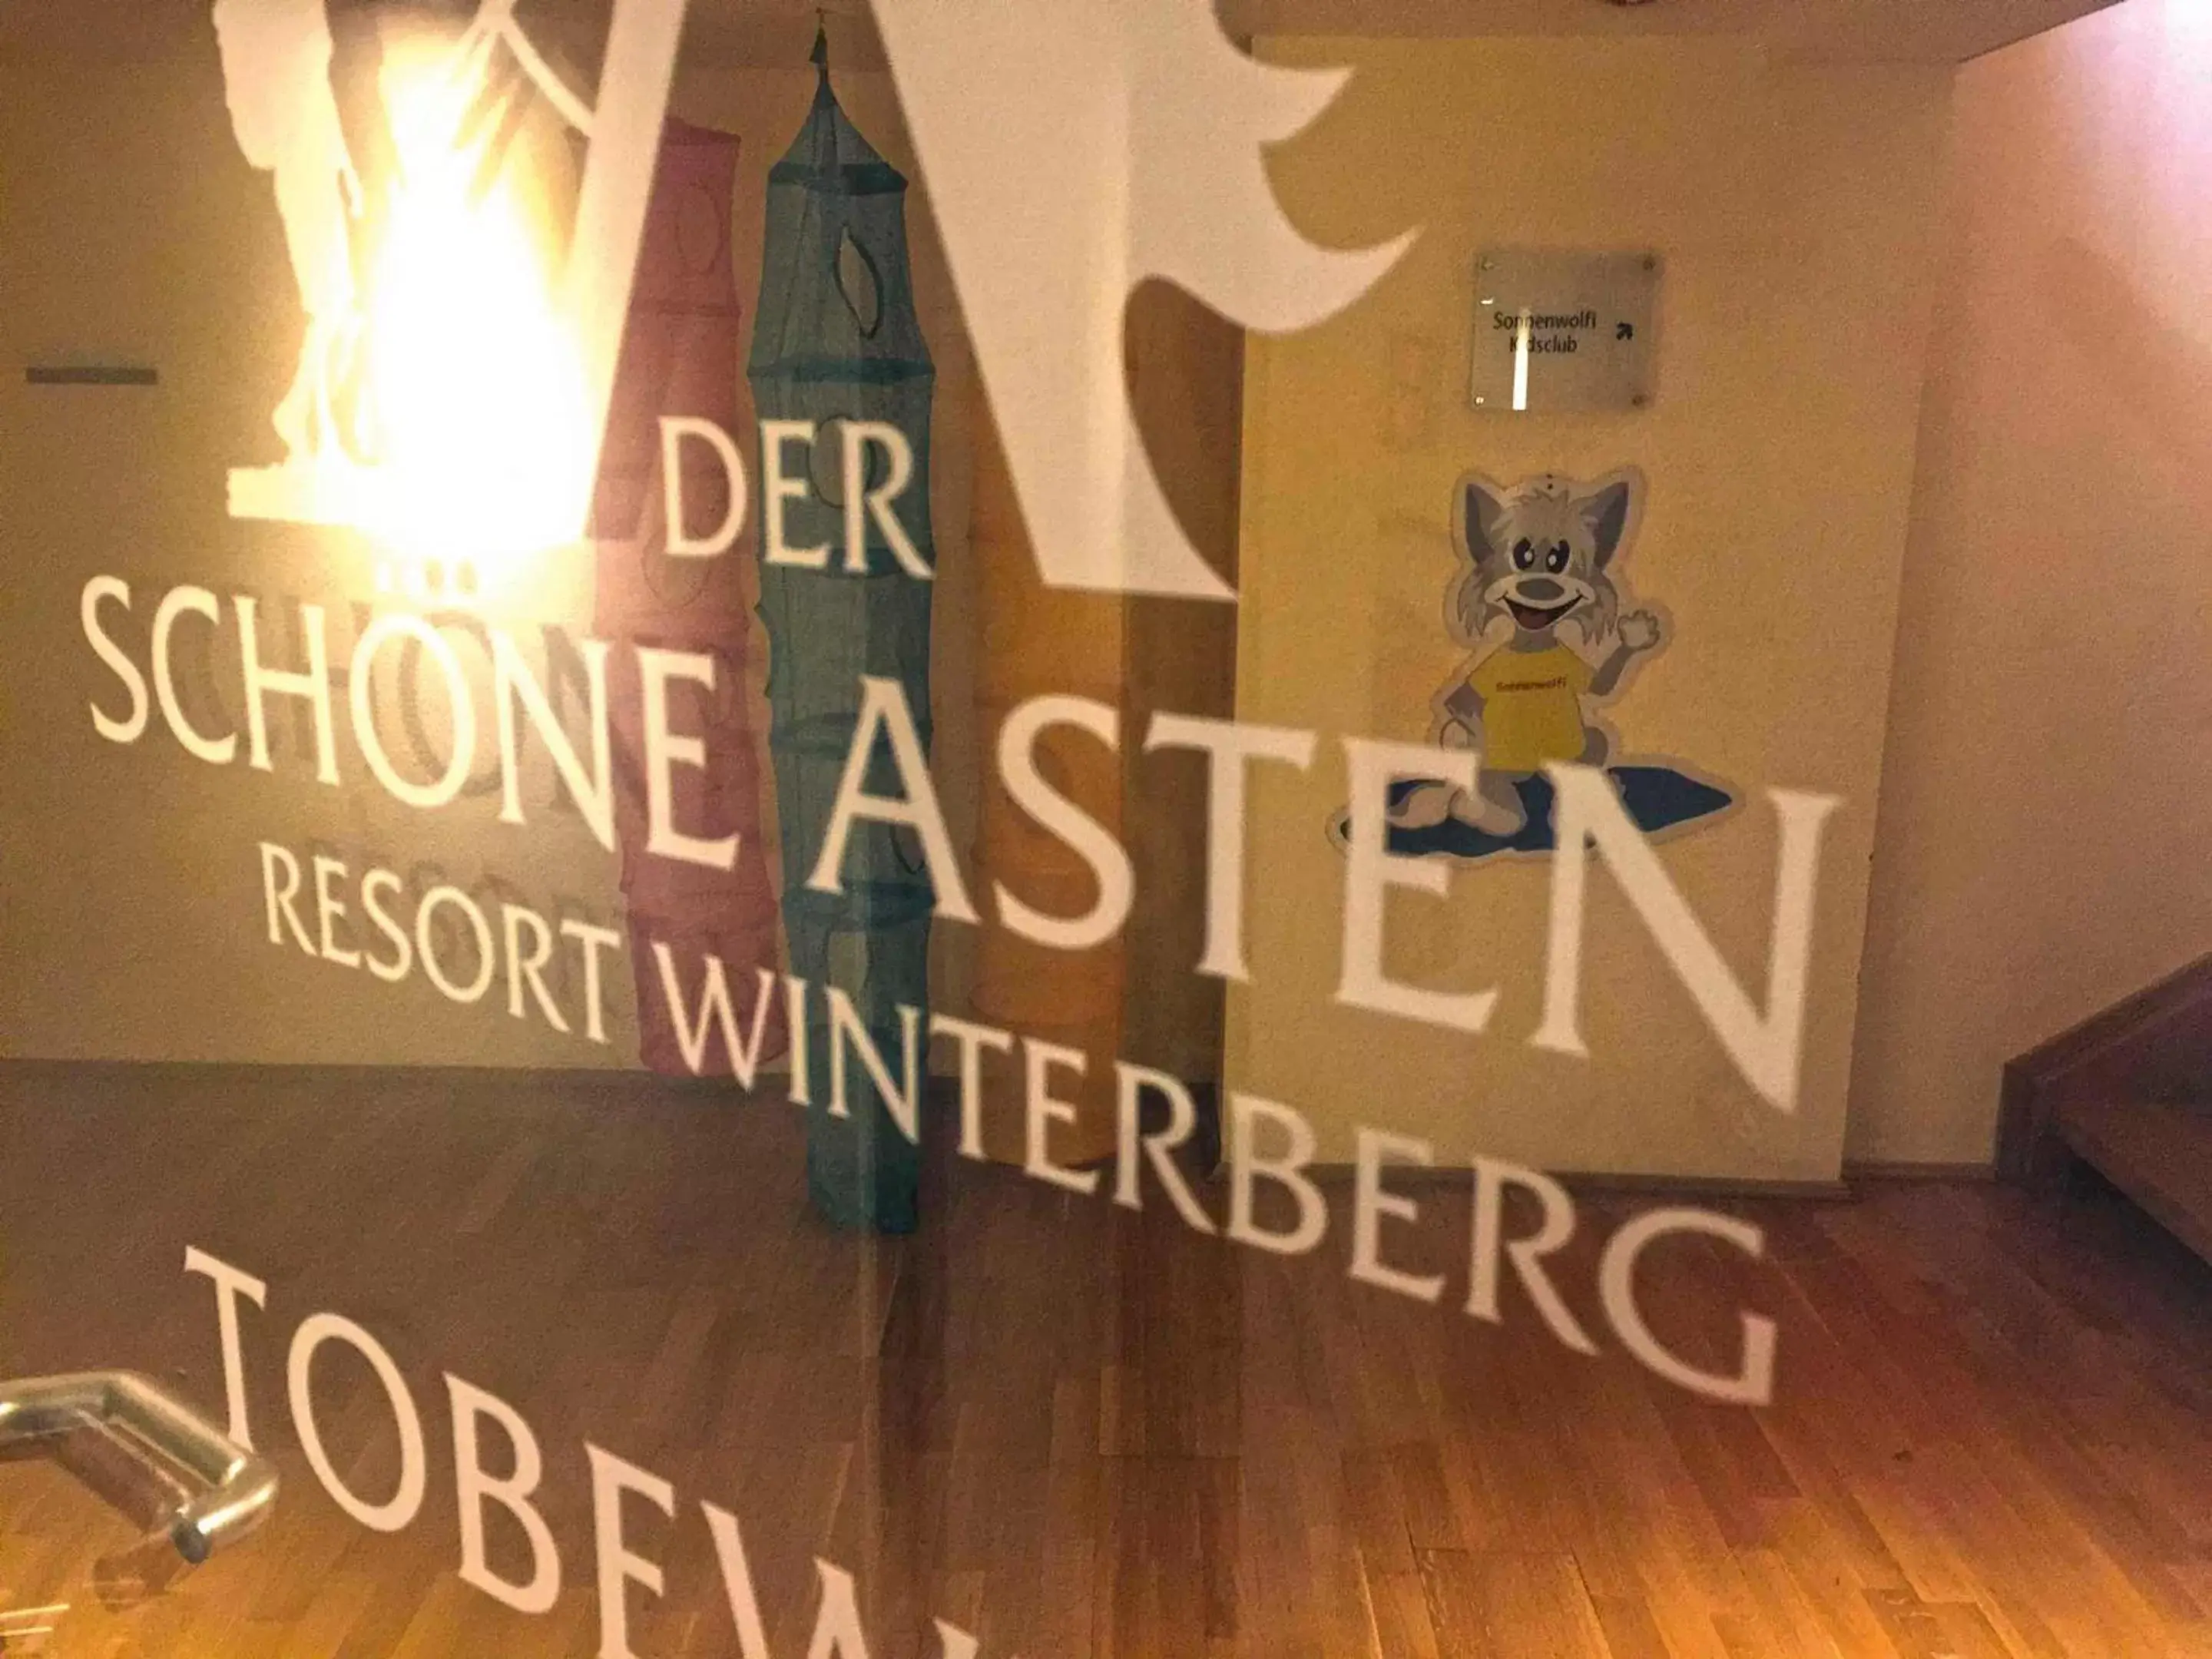 Kids's club, Property Logo/Sign in Der schöne Asten - Resort Winterberg